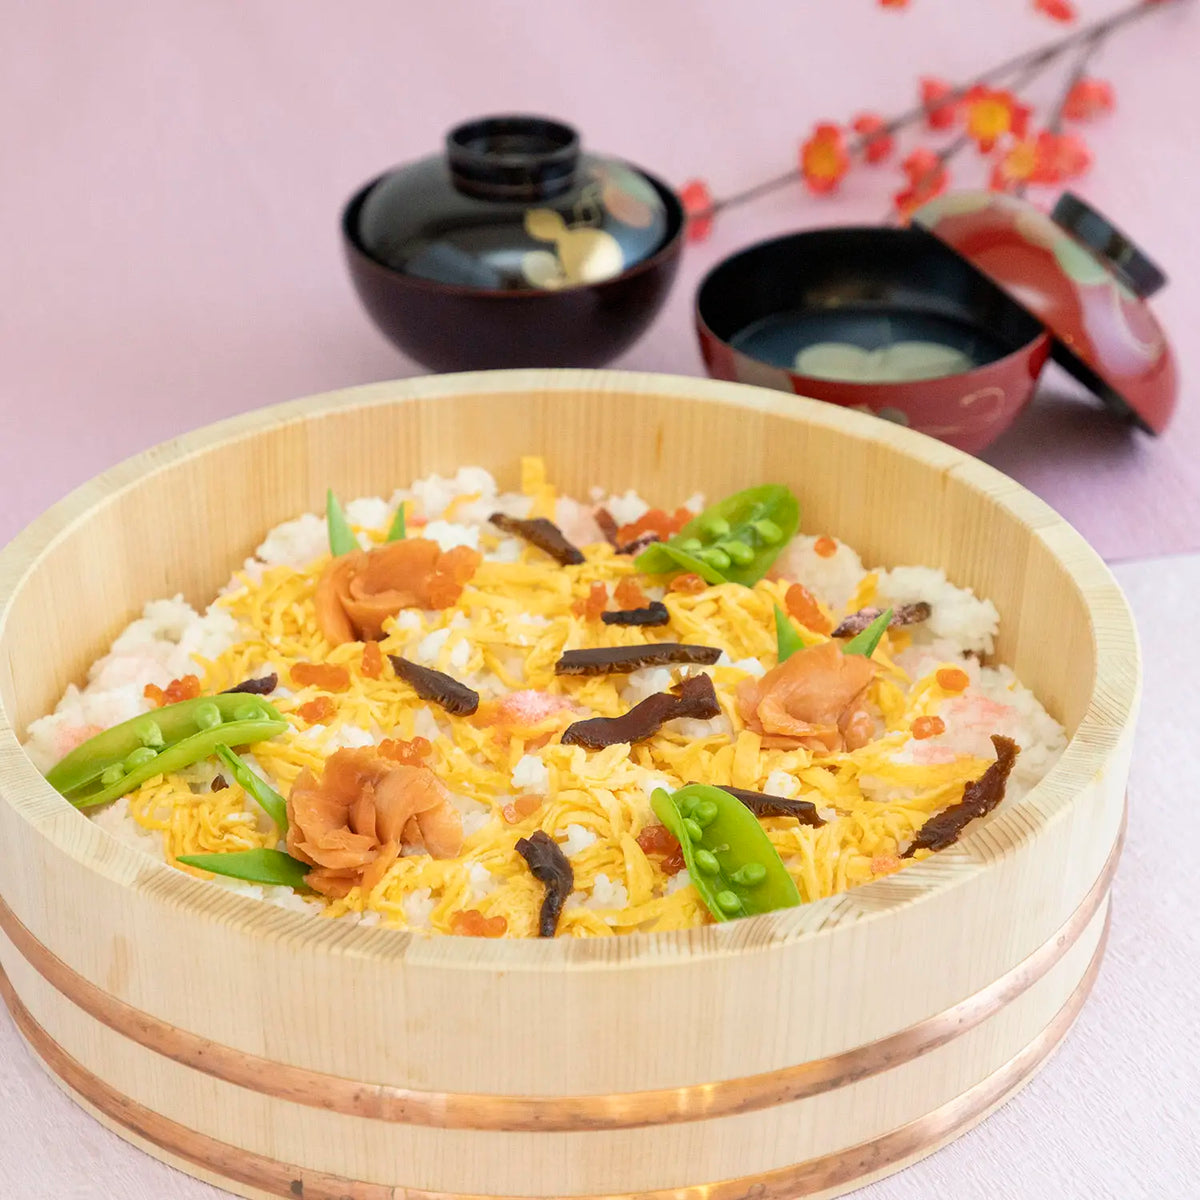 MIYABI URUSHI KOGEI Hangiri Sawara Wooden Rice Mixing Bowl with Lid